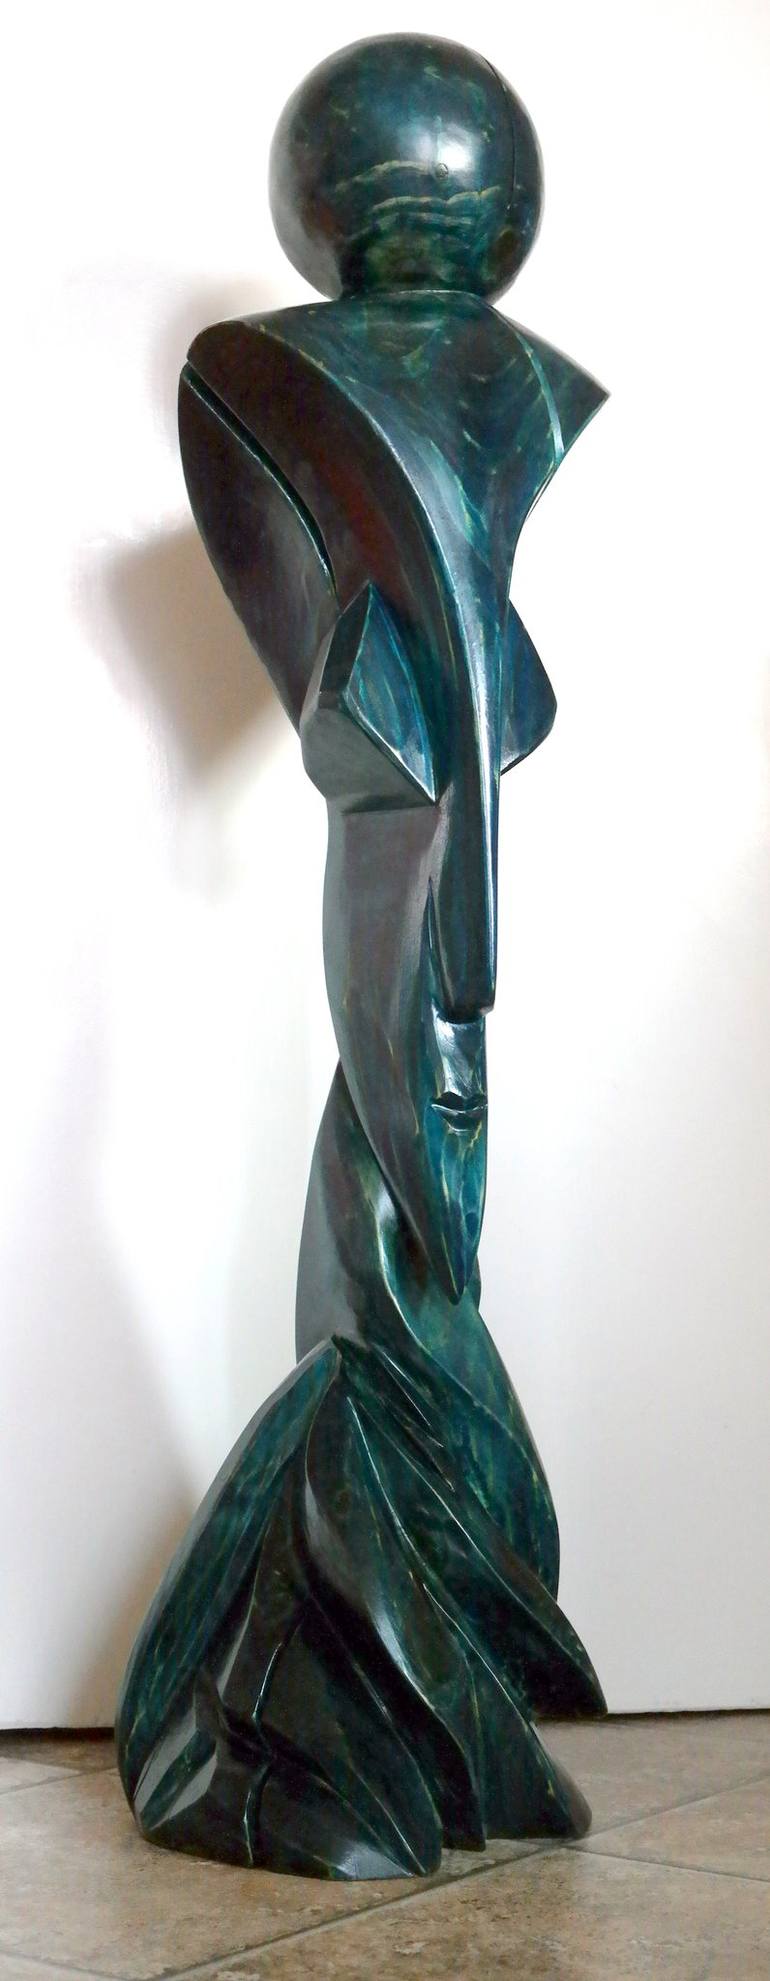 Original Business Sculpture by Hans-Joachim C Paul